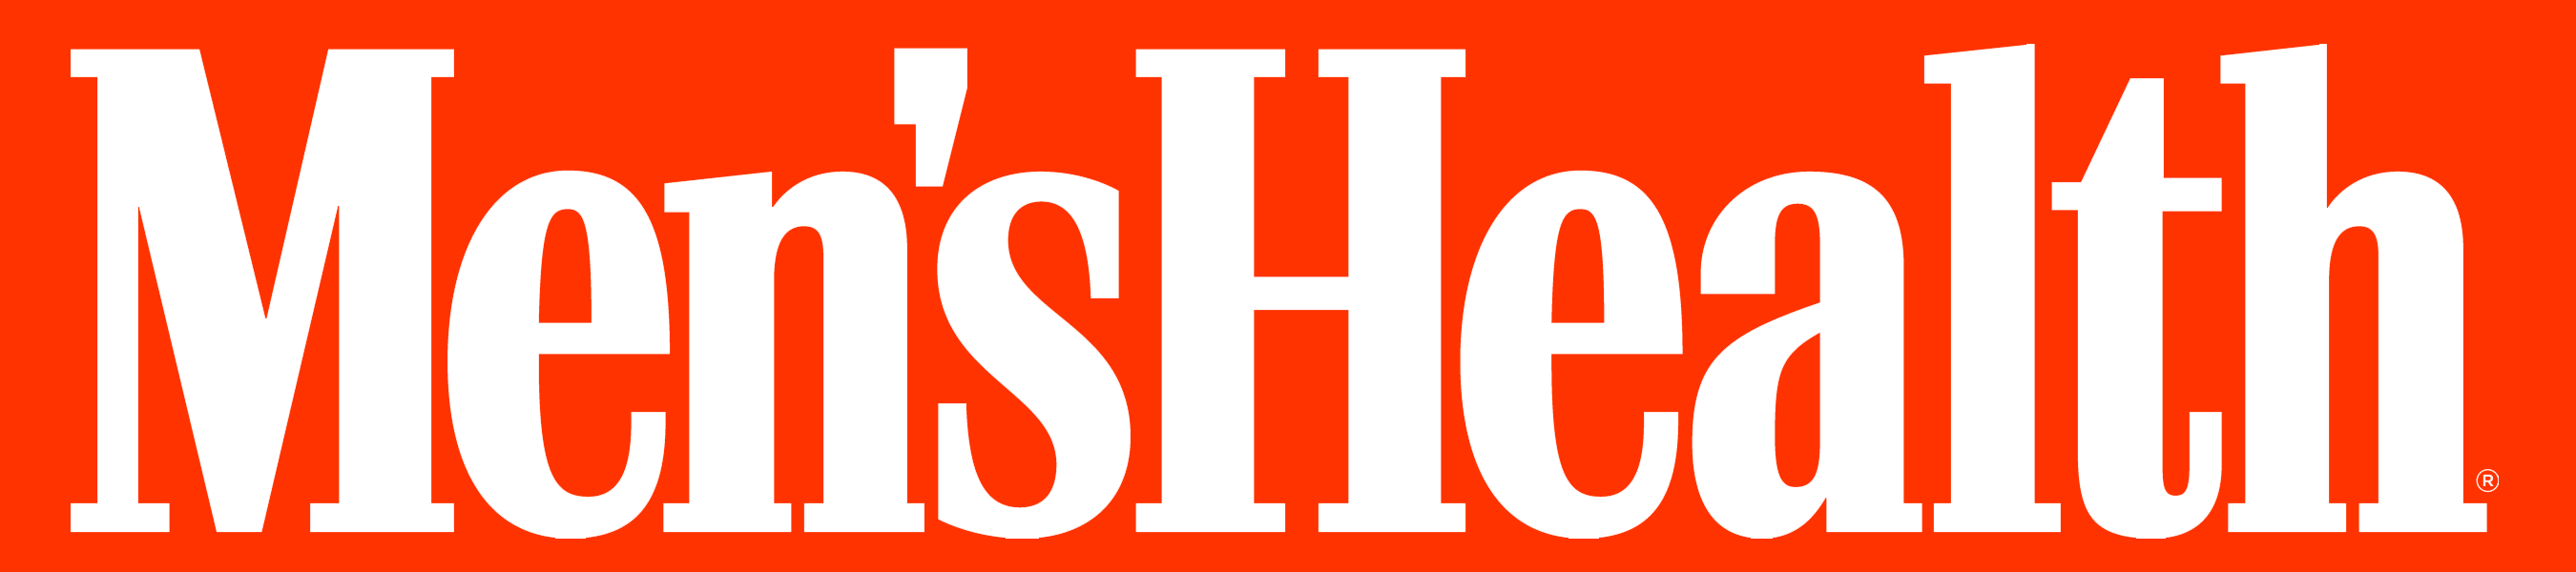 Mens Health logo orange bg